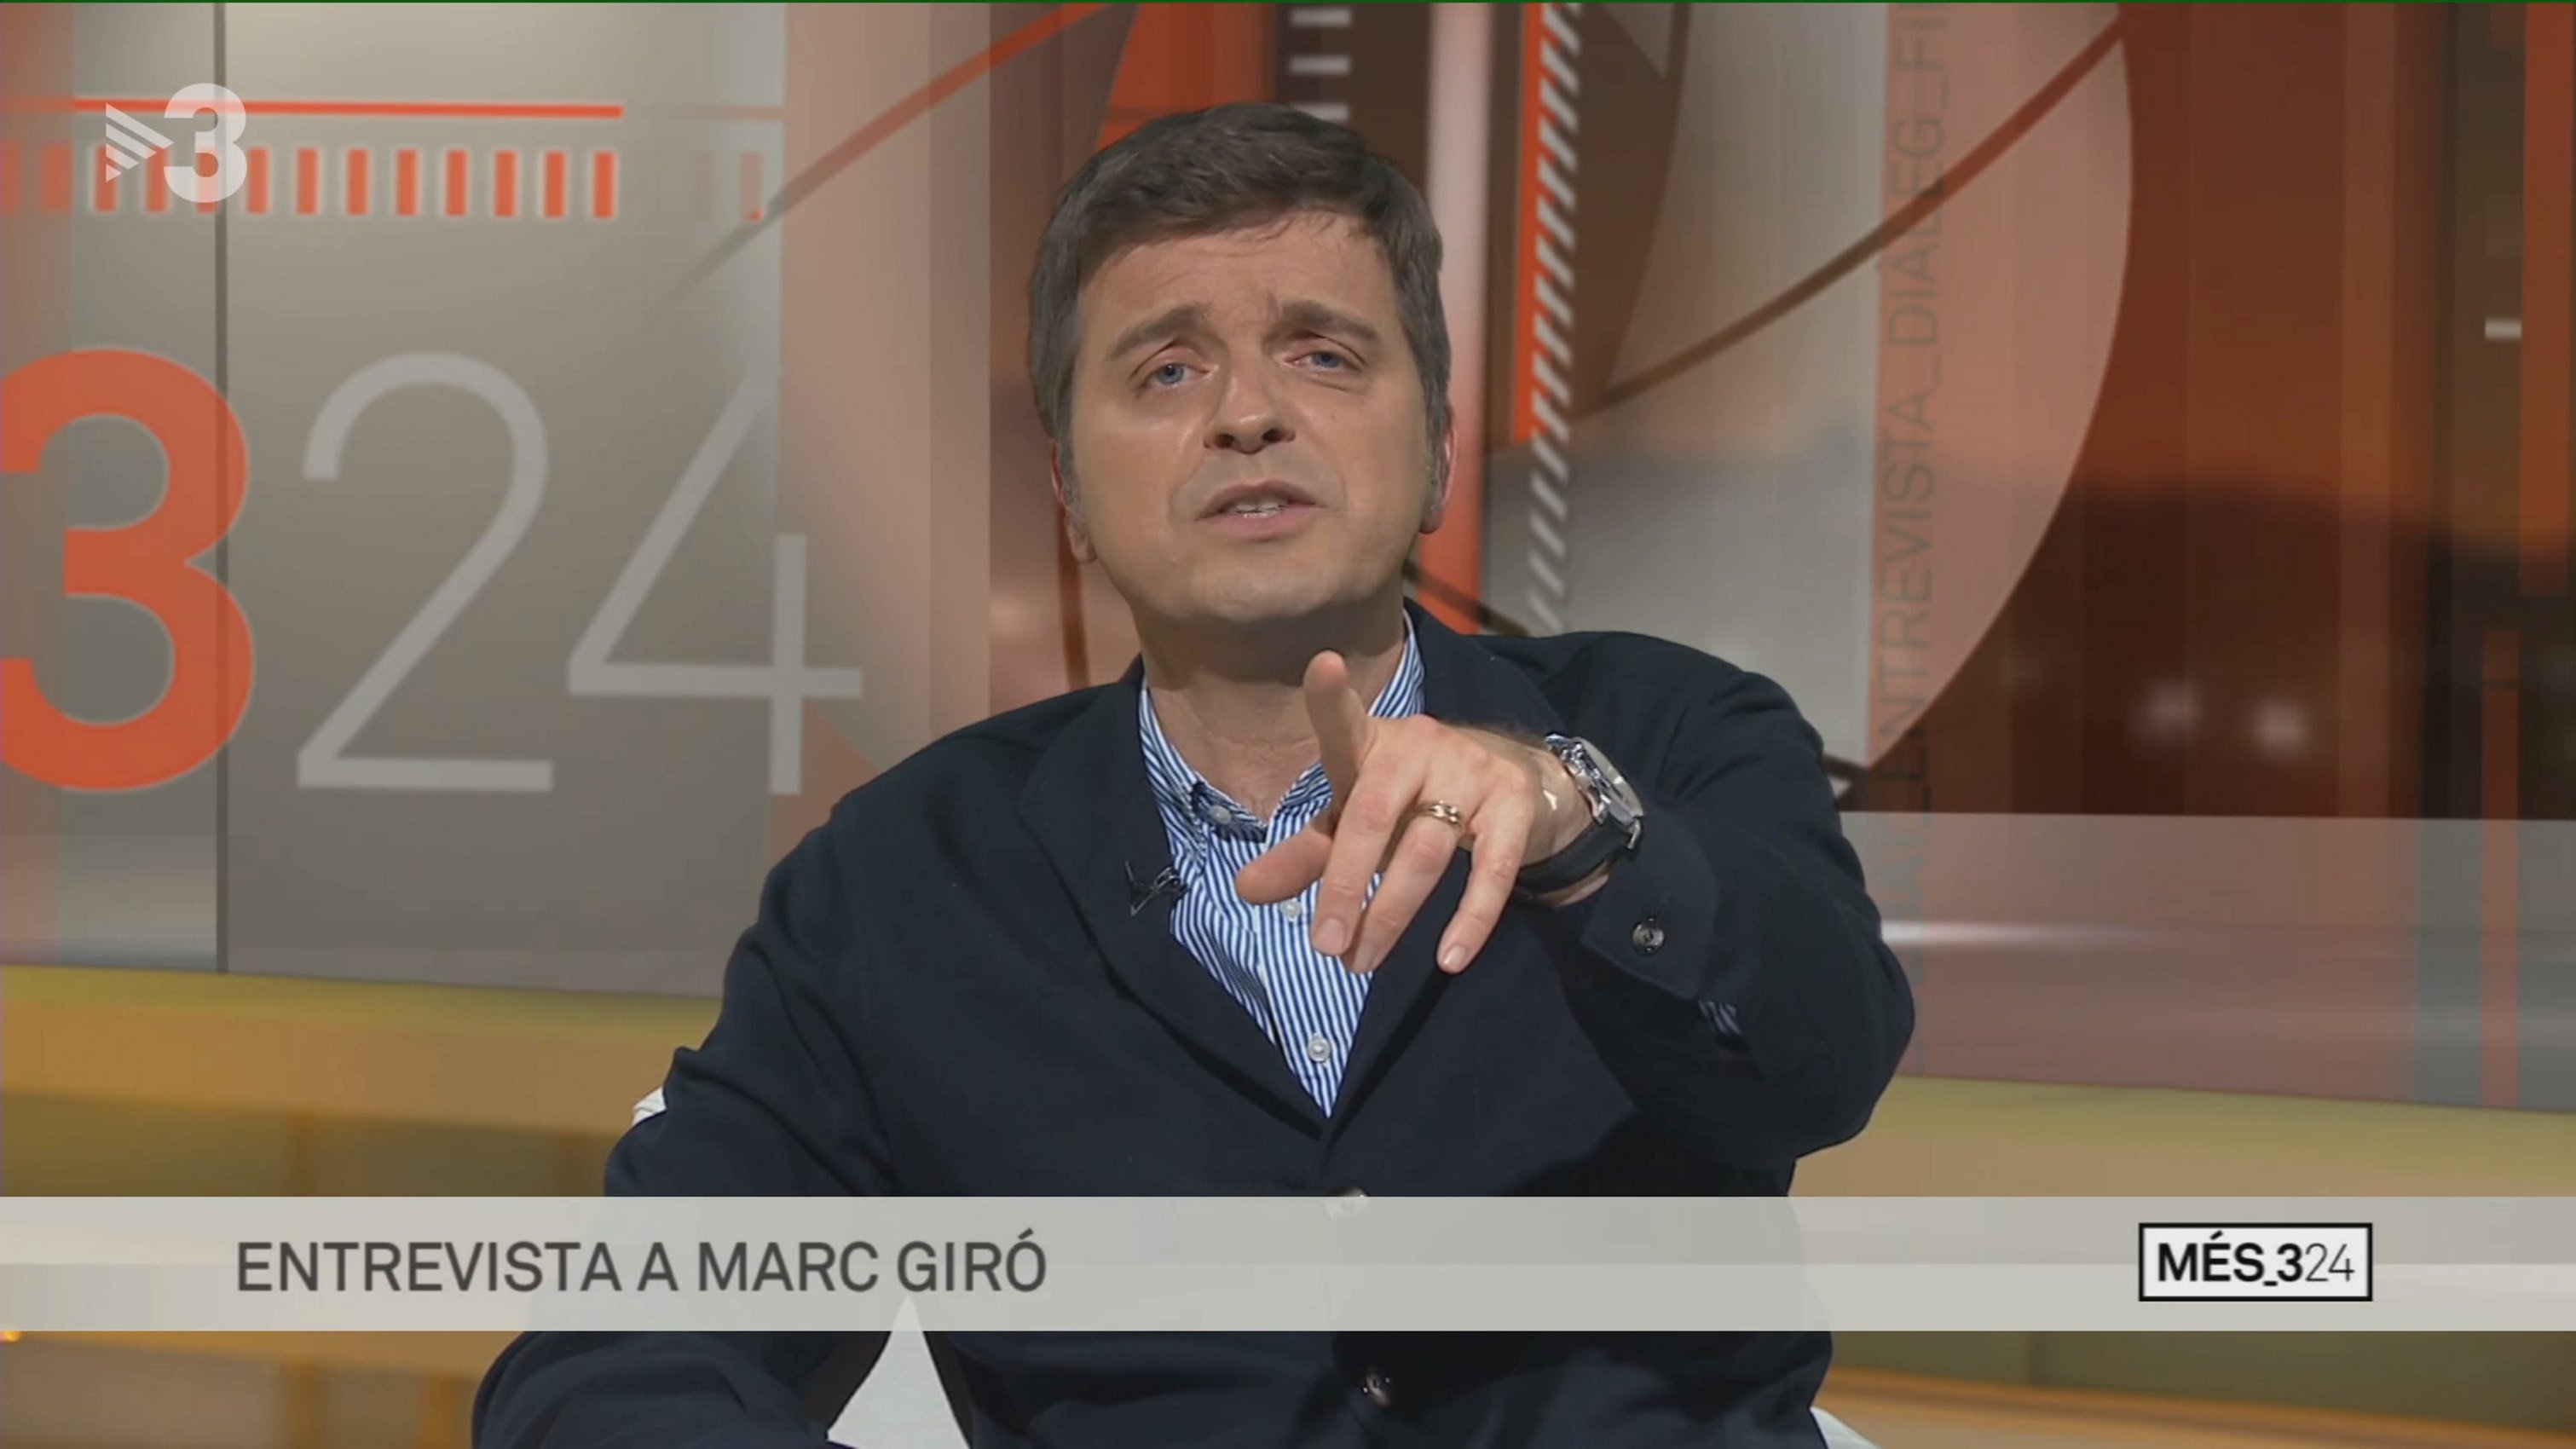 Momentàs a TV3: Marc Giró al plató del TN. Va a la taula de Cruanyes i fa això